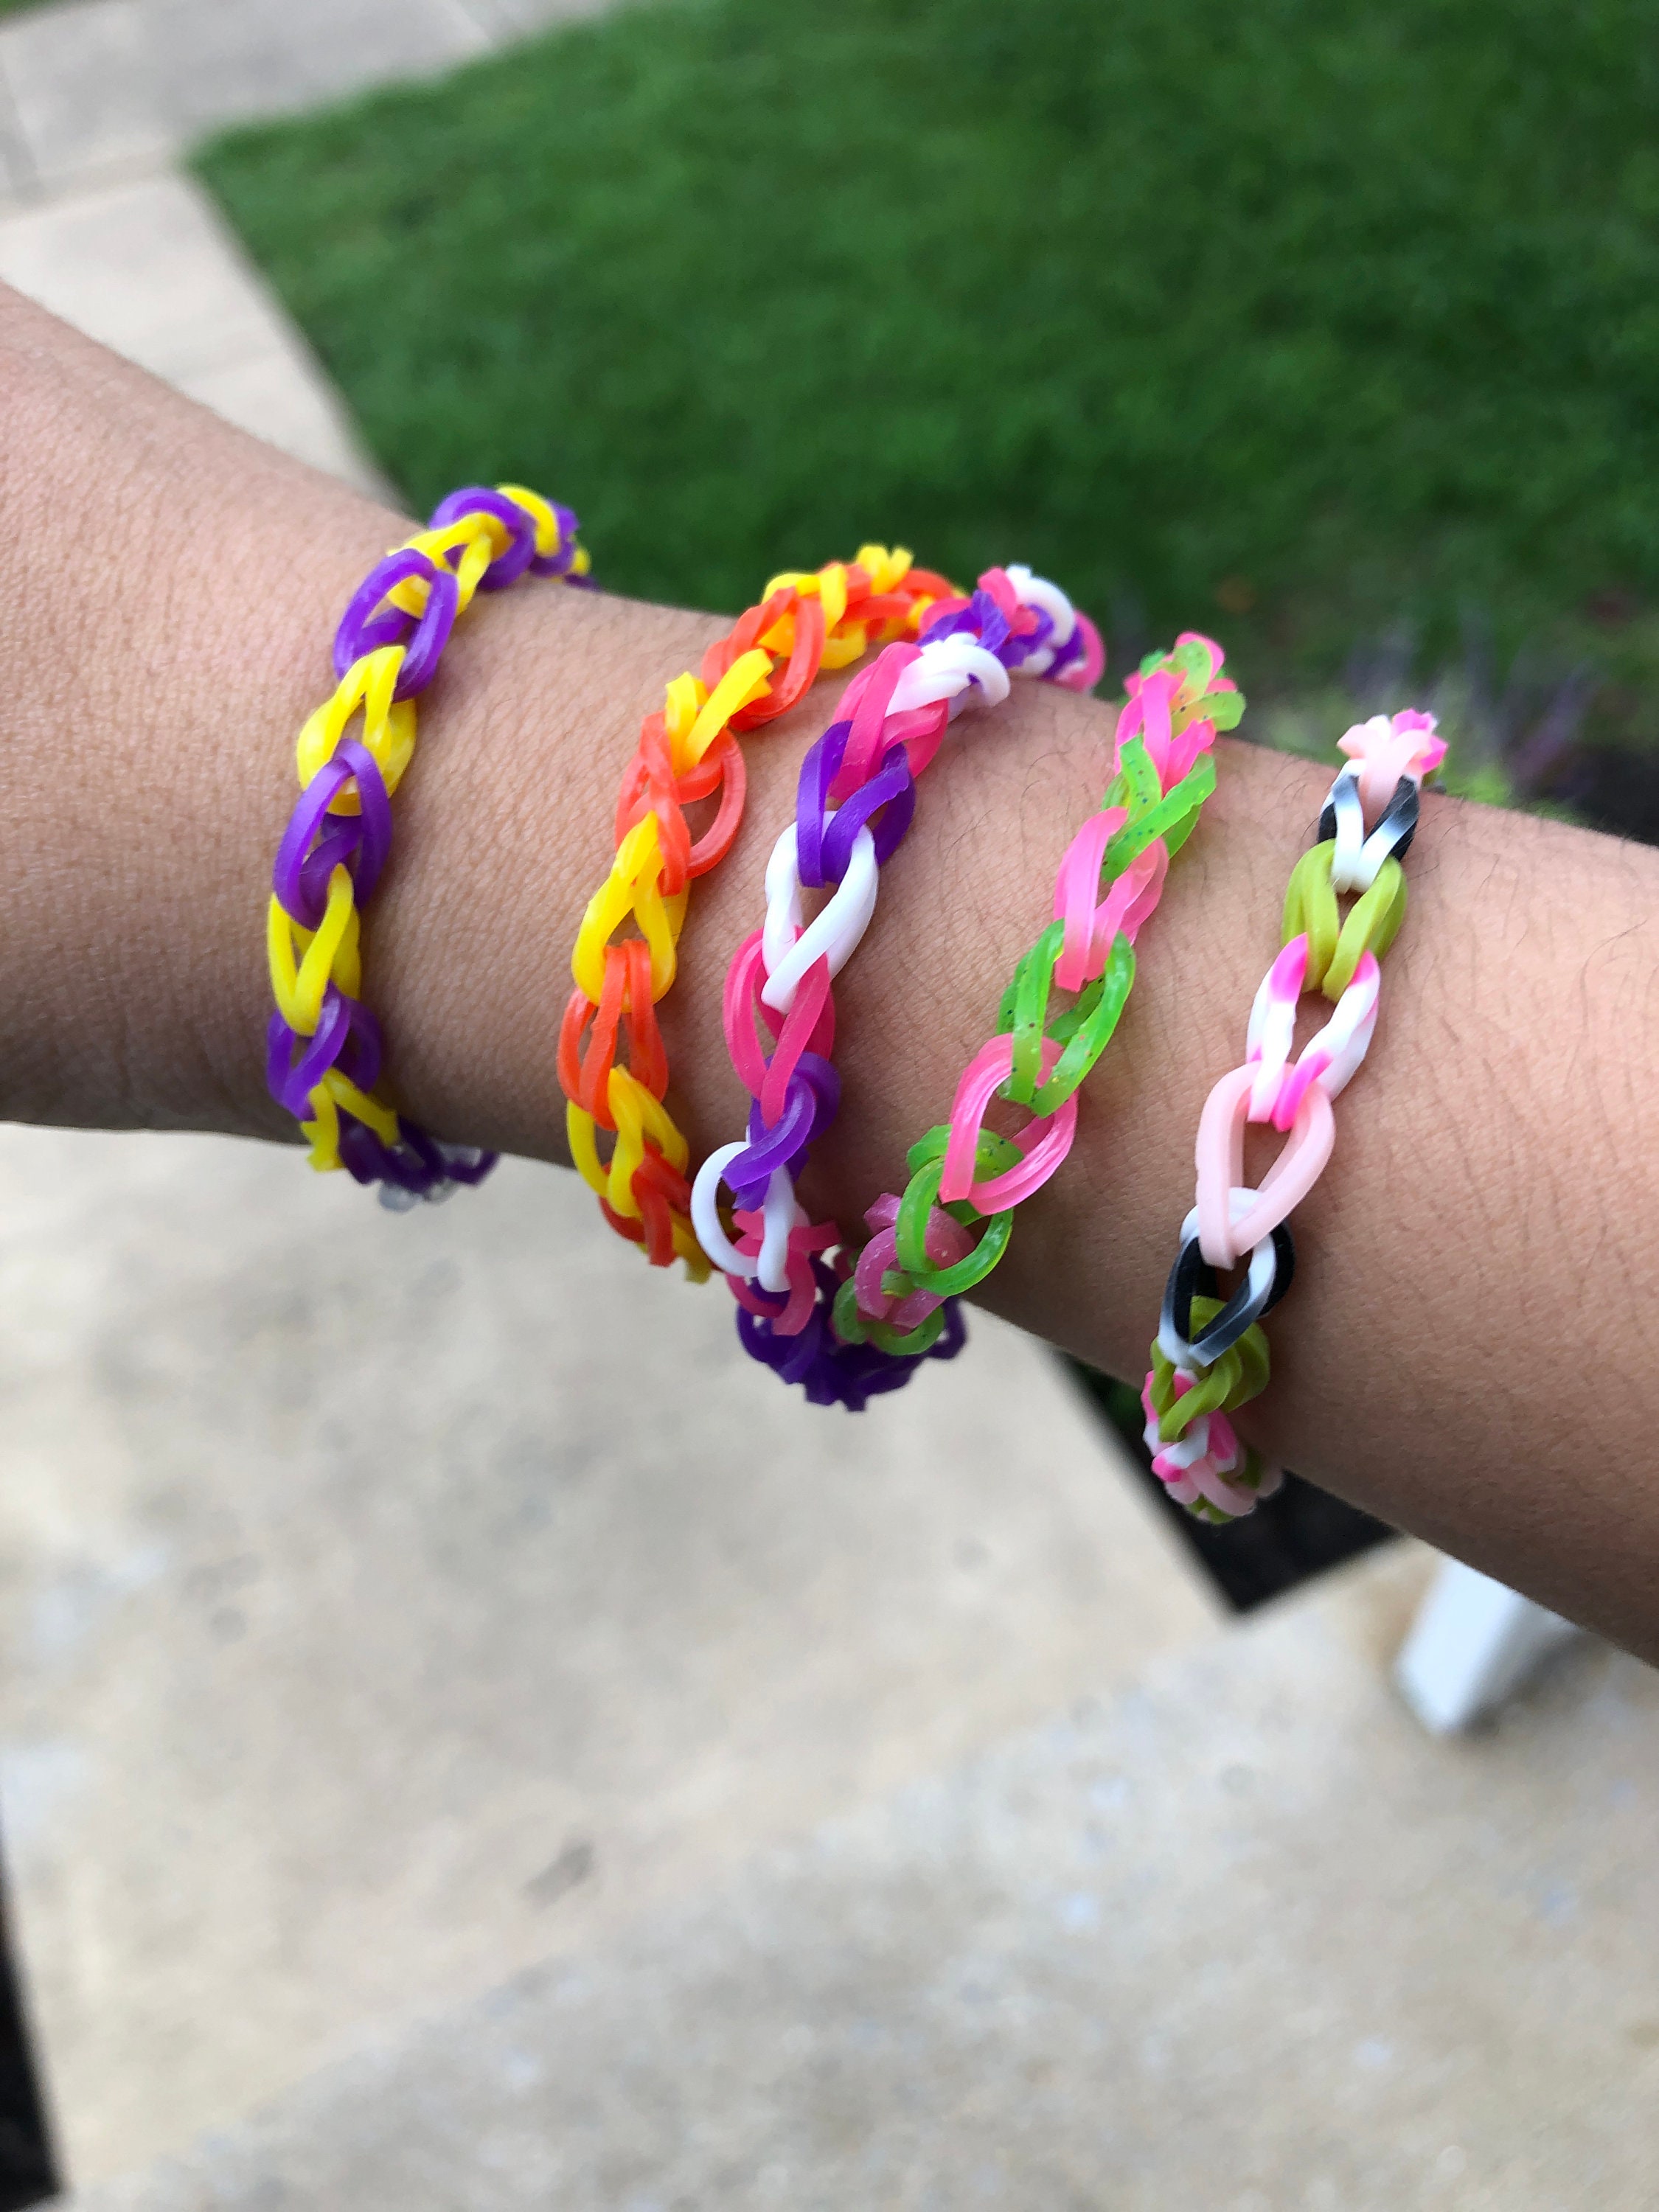 2 Pack of Beaded Rainbow Loom Bracelets